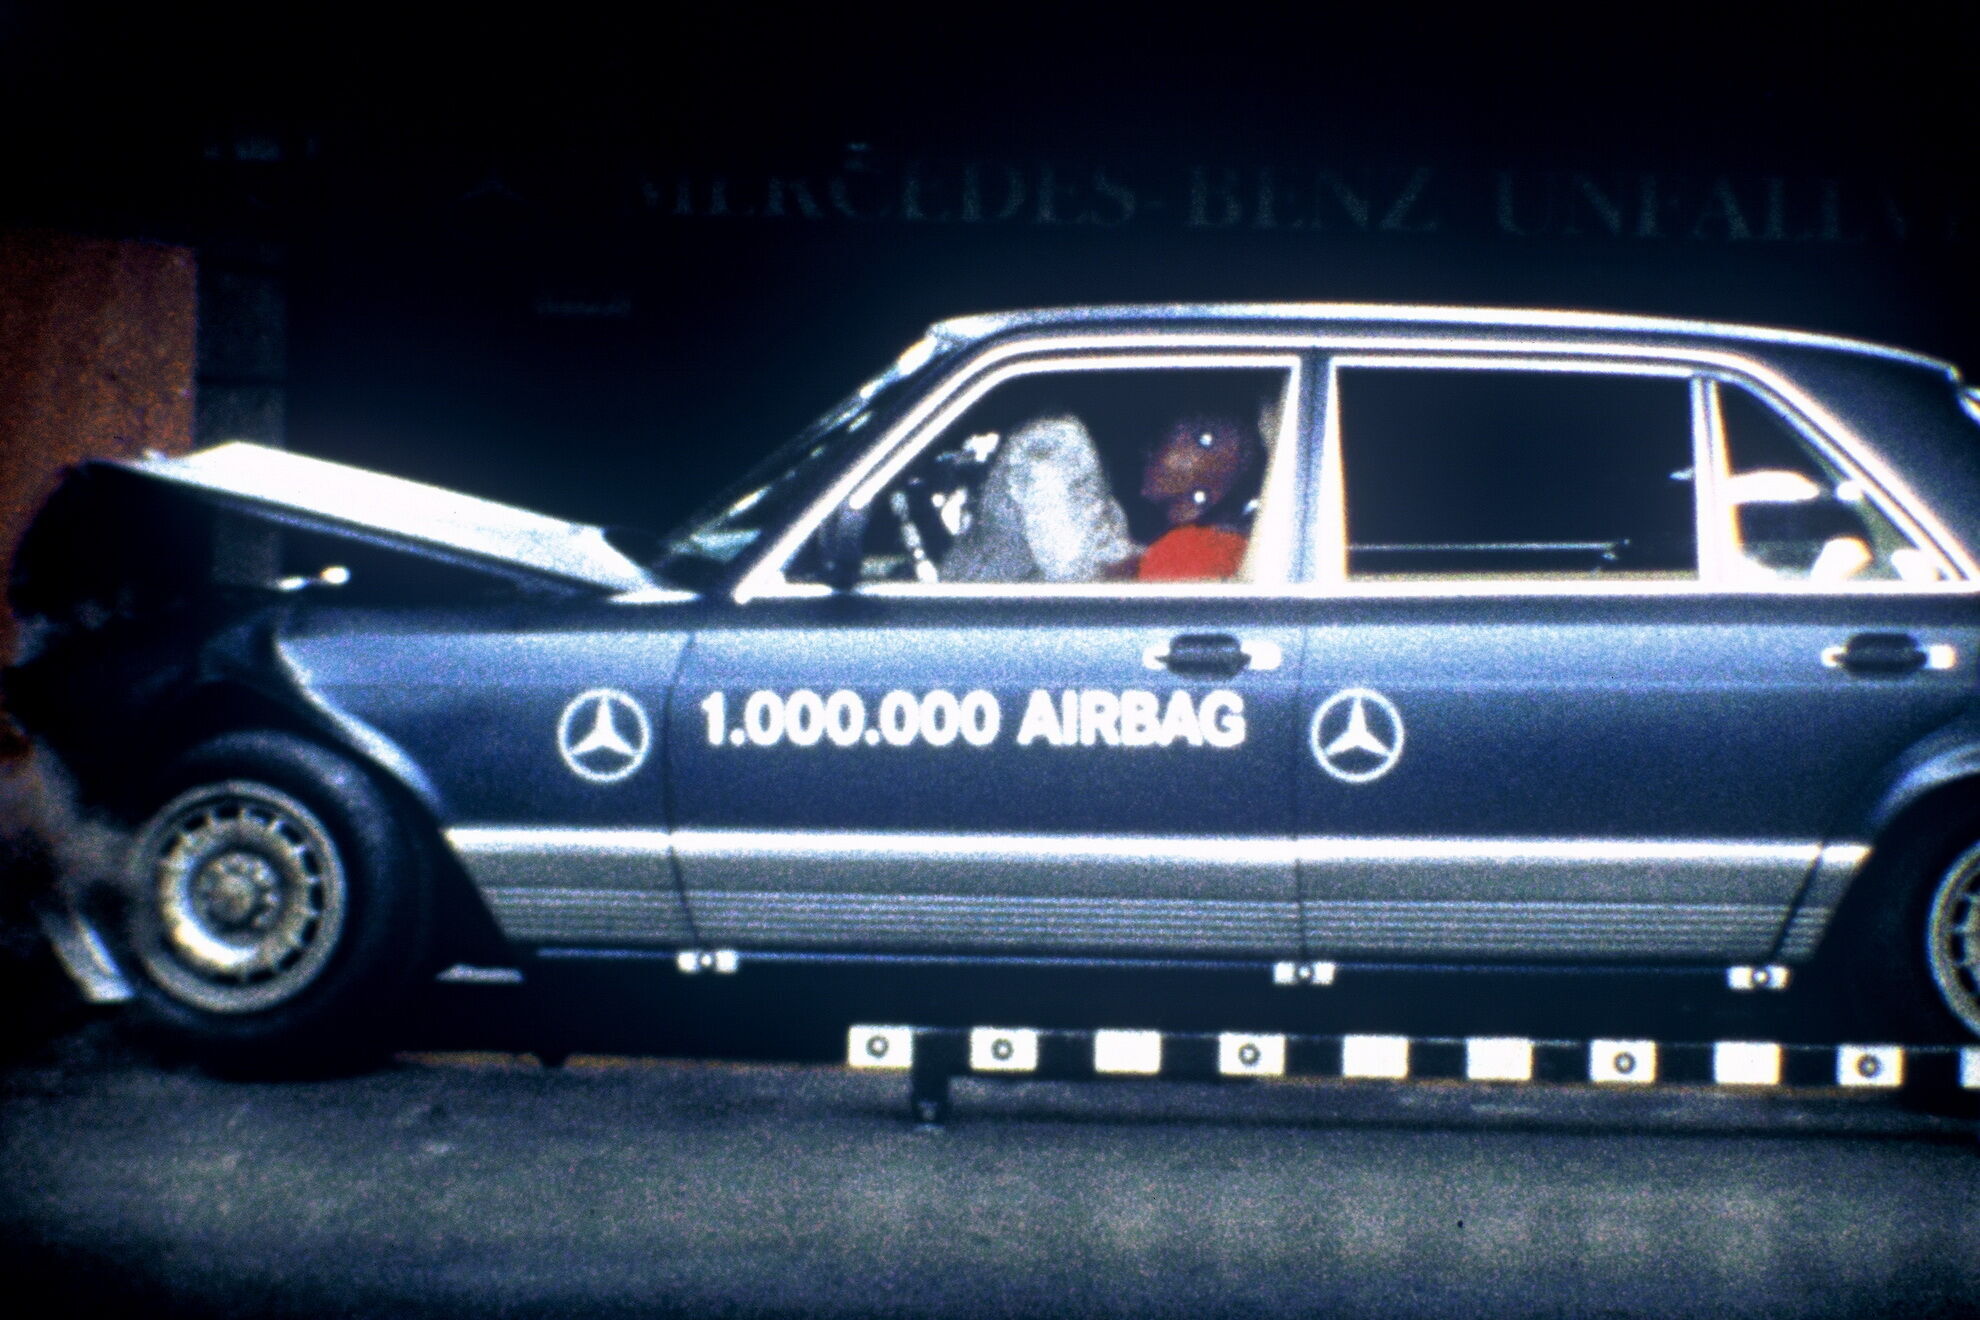 Краш-тест Mercedes-Benz 500 SEL 1981 року випуску був проведений в липні 1992 року на честь випуску мільйонного автомобіля з подушками безпеки. Краш-тест продемонстрував, що навіть через 11 років подушка ідеально справляється зі своїми функціями.